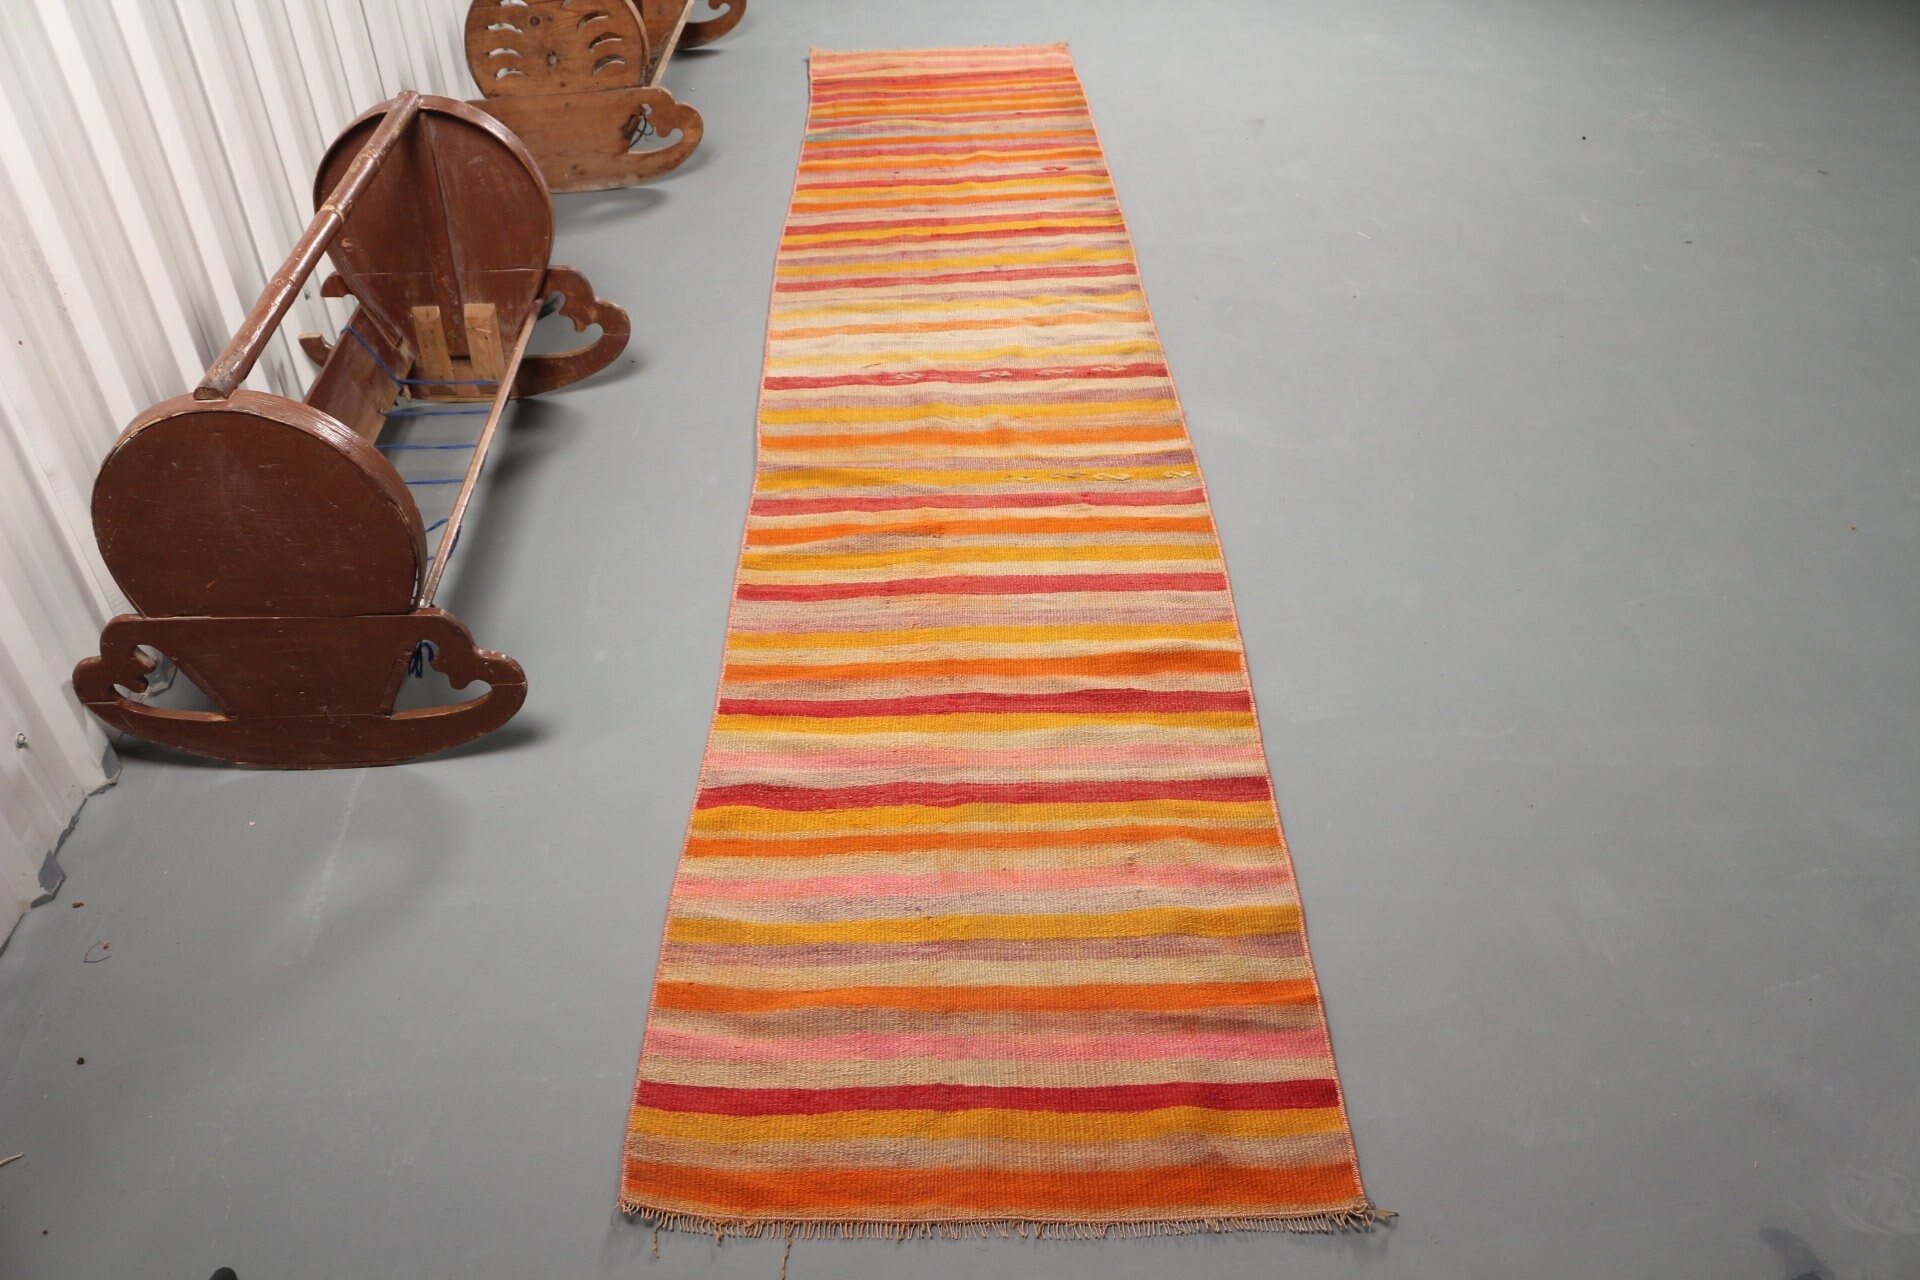 Kilim, Turkish Rugs, Vintage Rugs, Kitchen Rug, Floor Rugs, Orange Cool Rug, Rugs for Corridor, 2.2x11.1 ft Runner Rugs